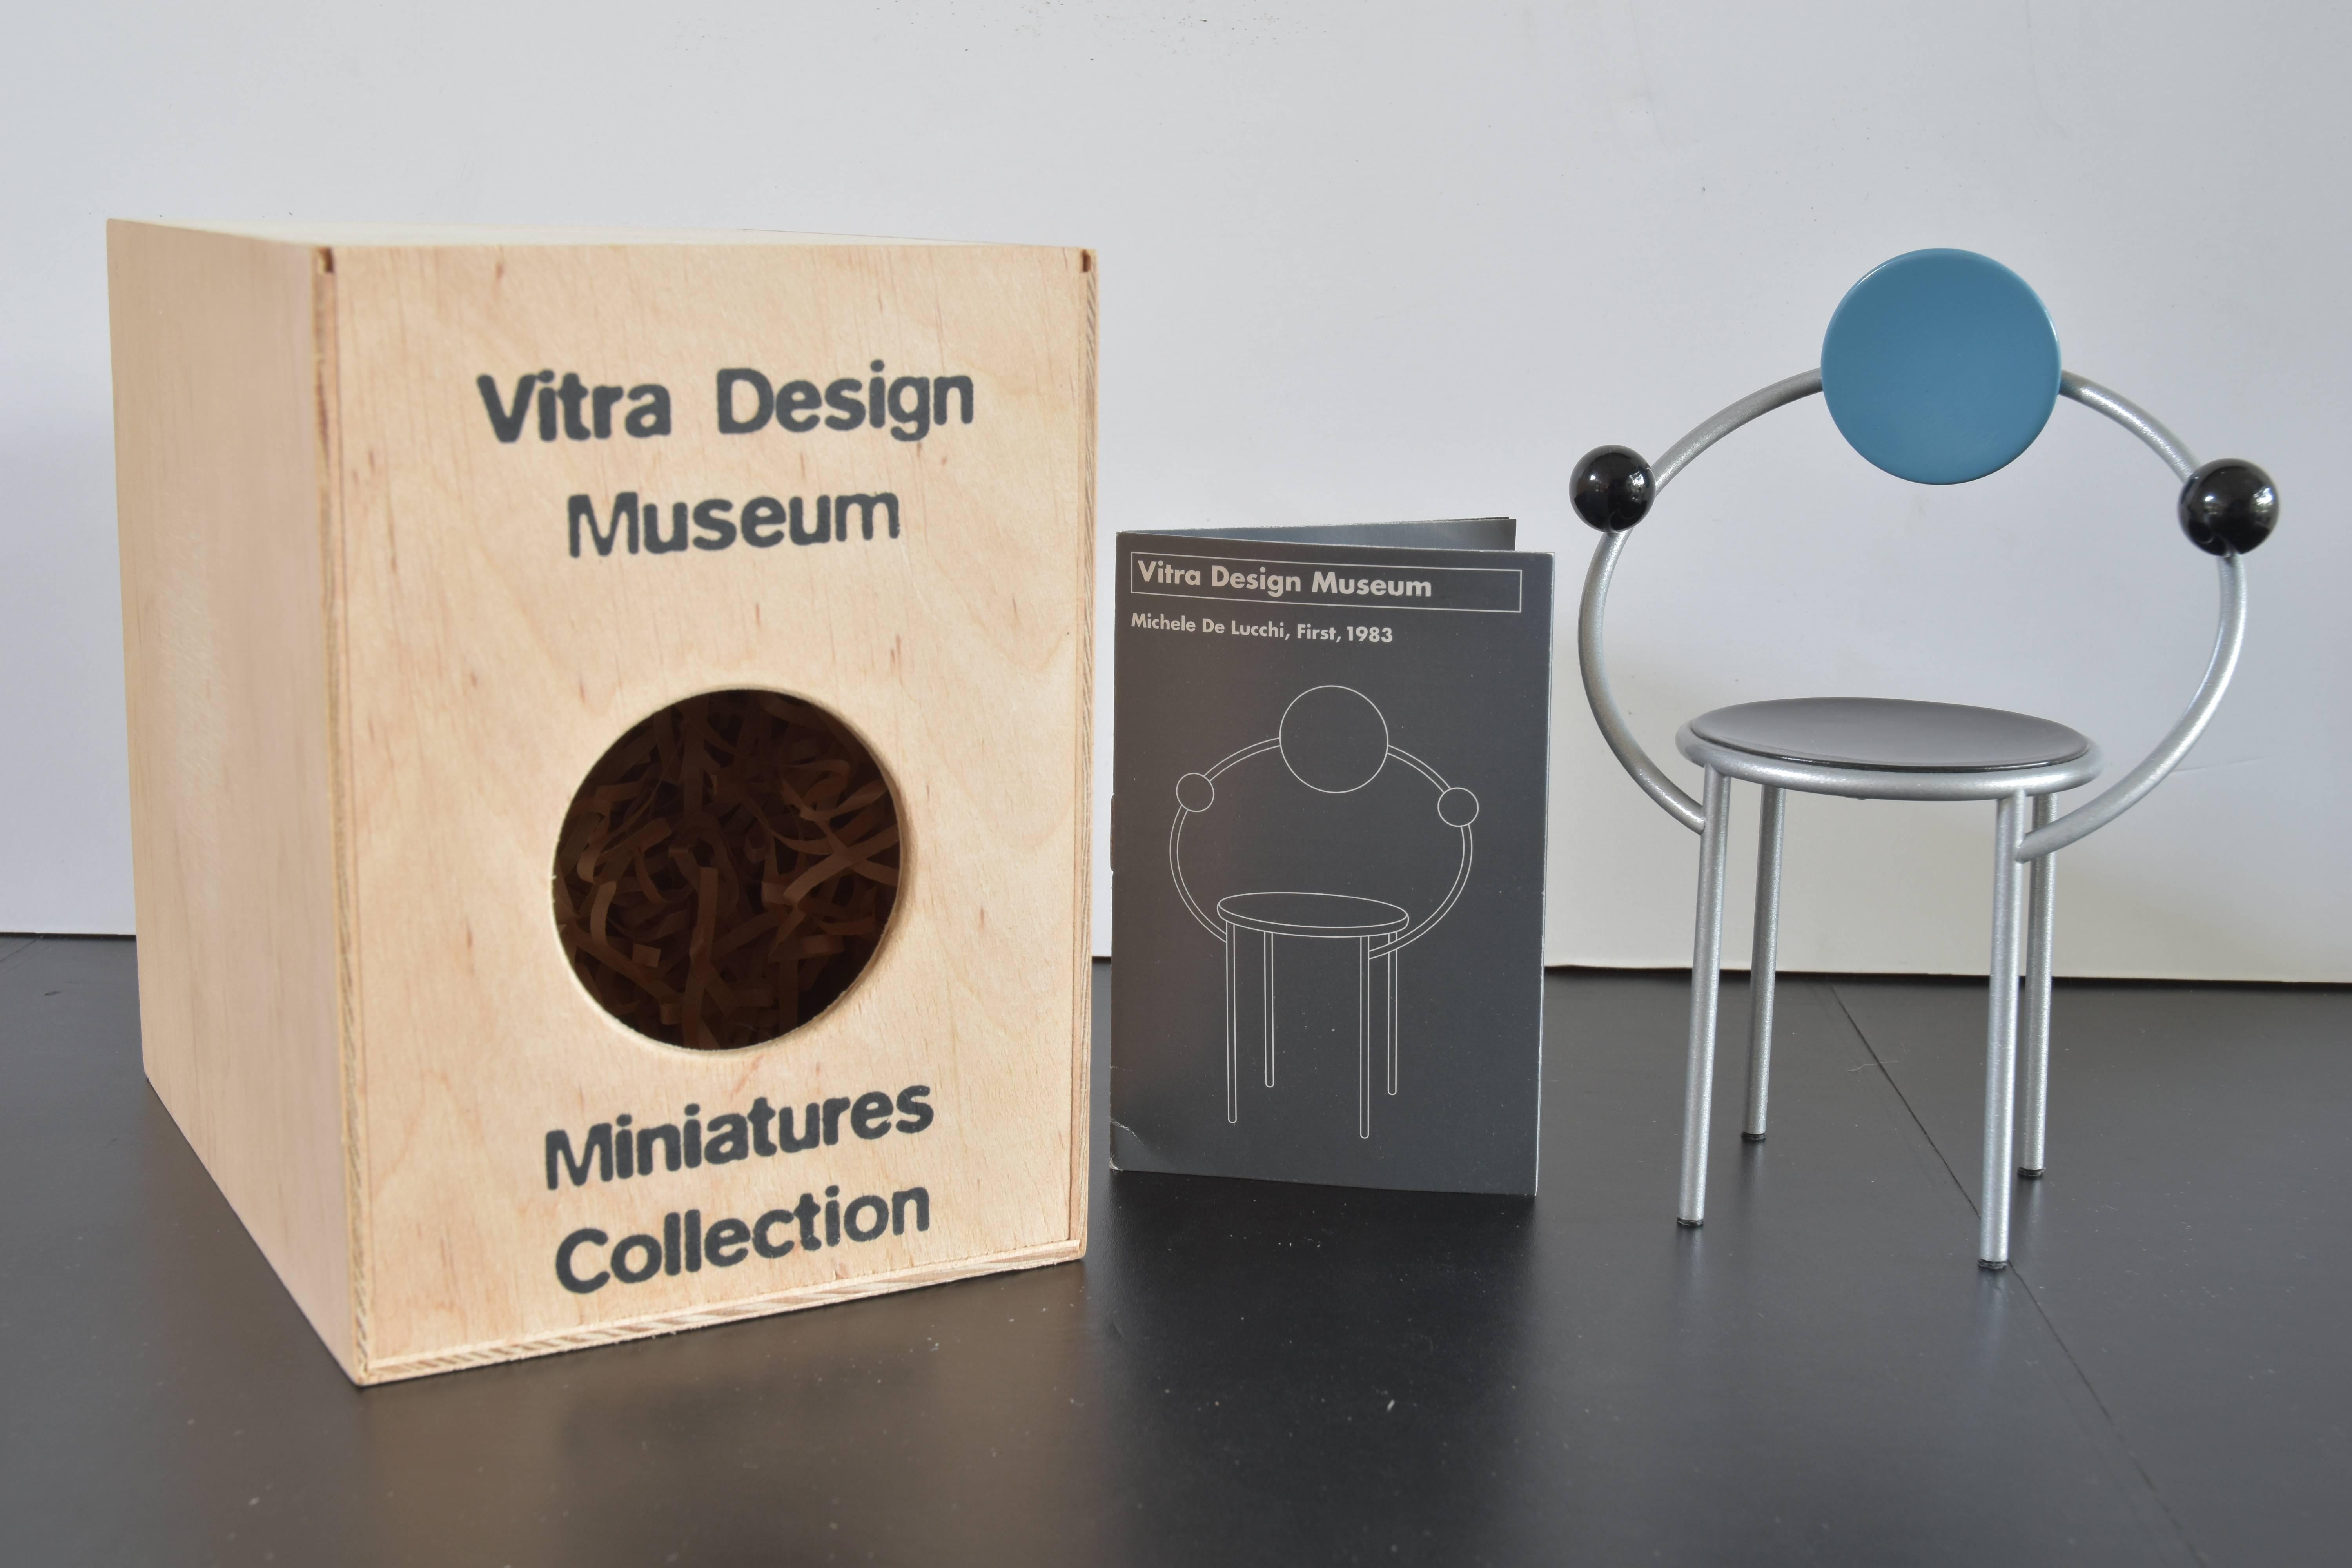 Aus der Sammlung von Miniaturmodellen des Vitra Design Museums, ein Michele De Lucchi, First Model Stuhl aus dem Jahr 1983.

Dazu gehören das Miniaturmodell und eine historische Beschreibung des Herstellers und des Stücks.